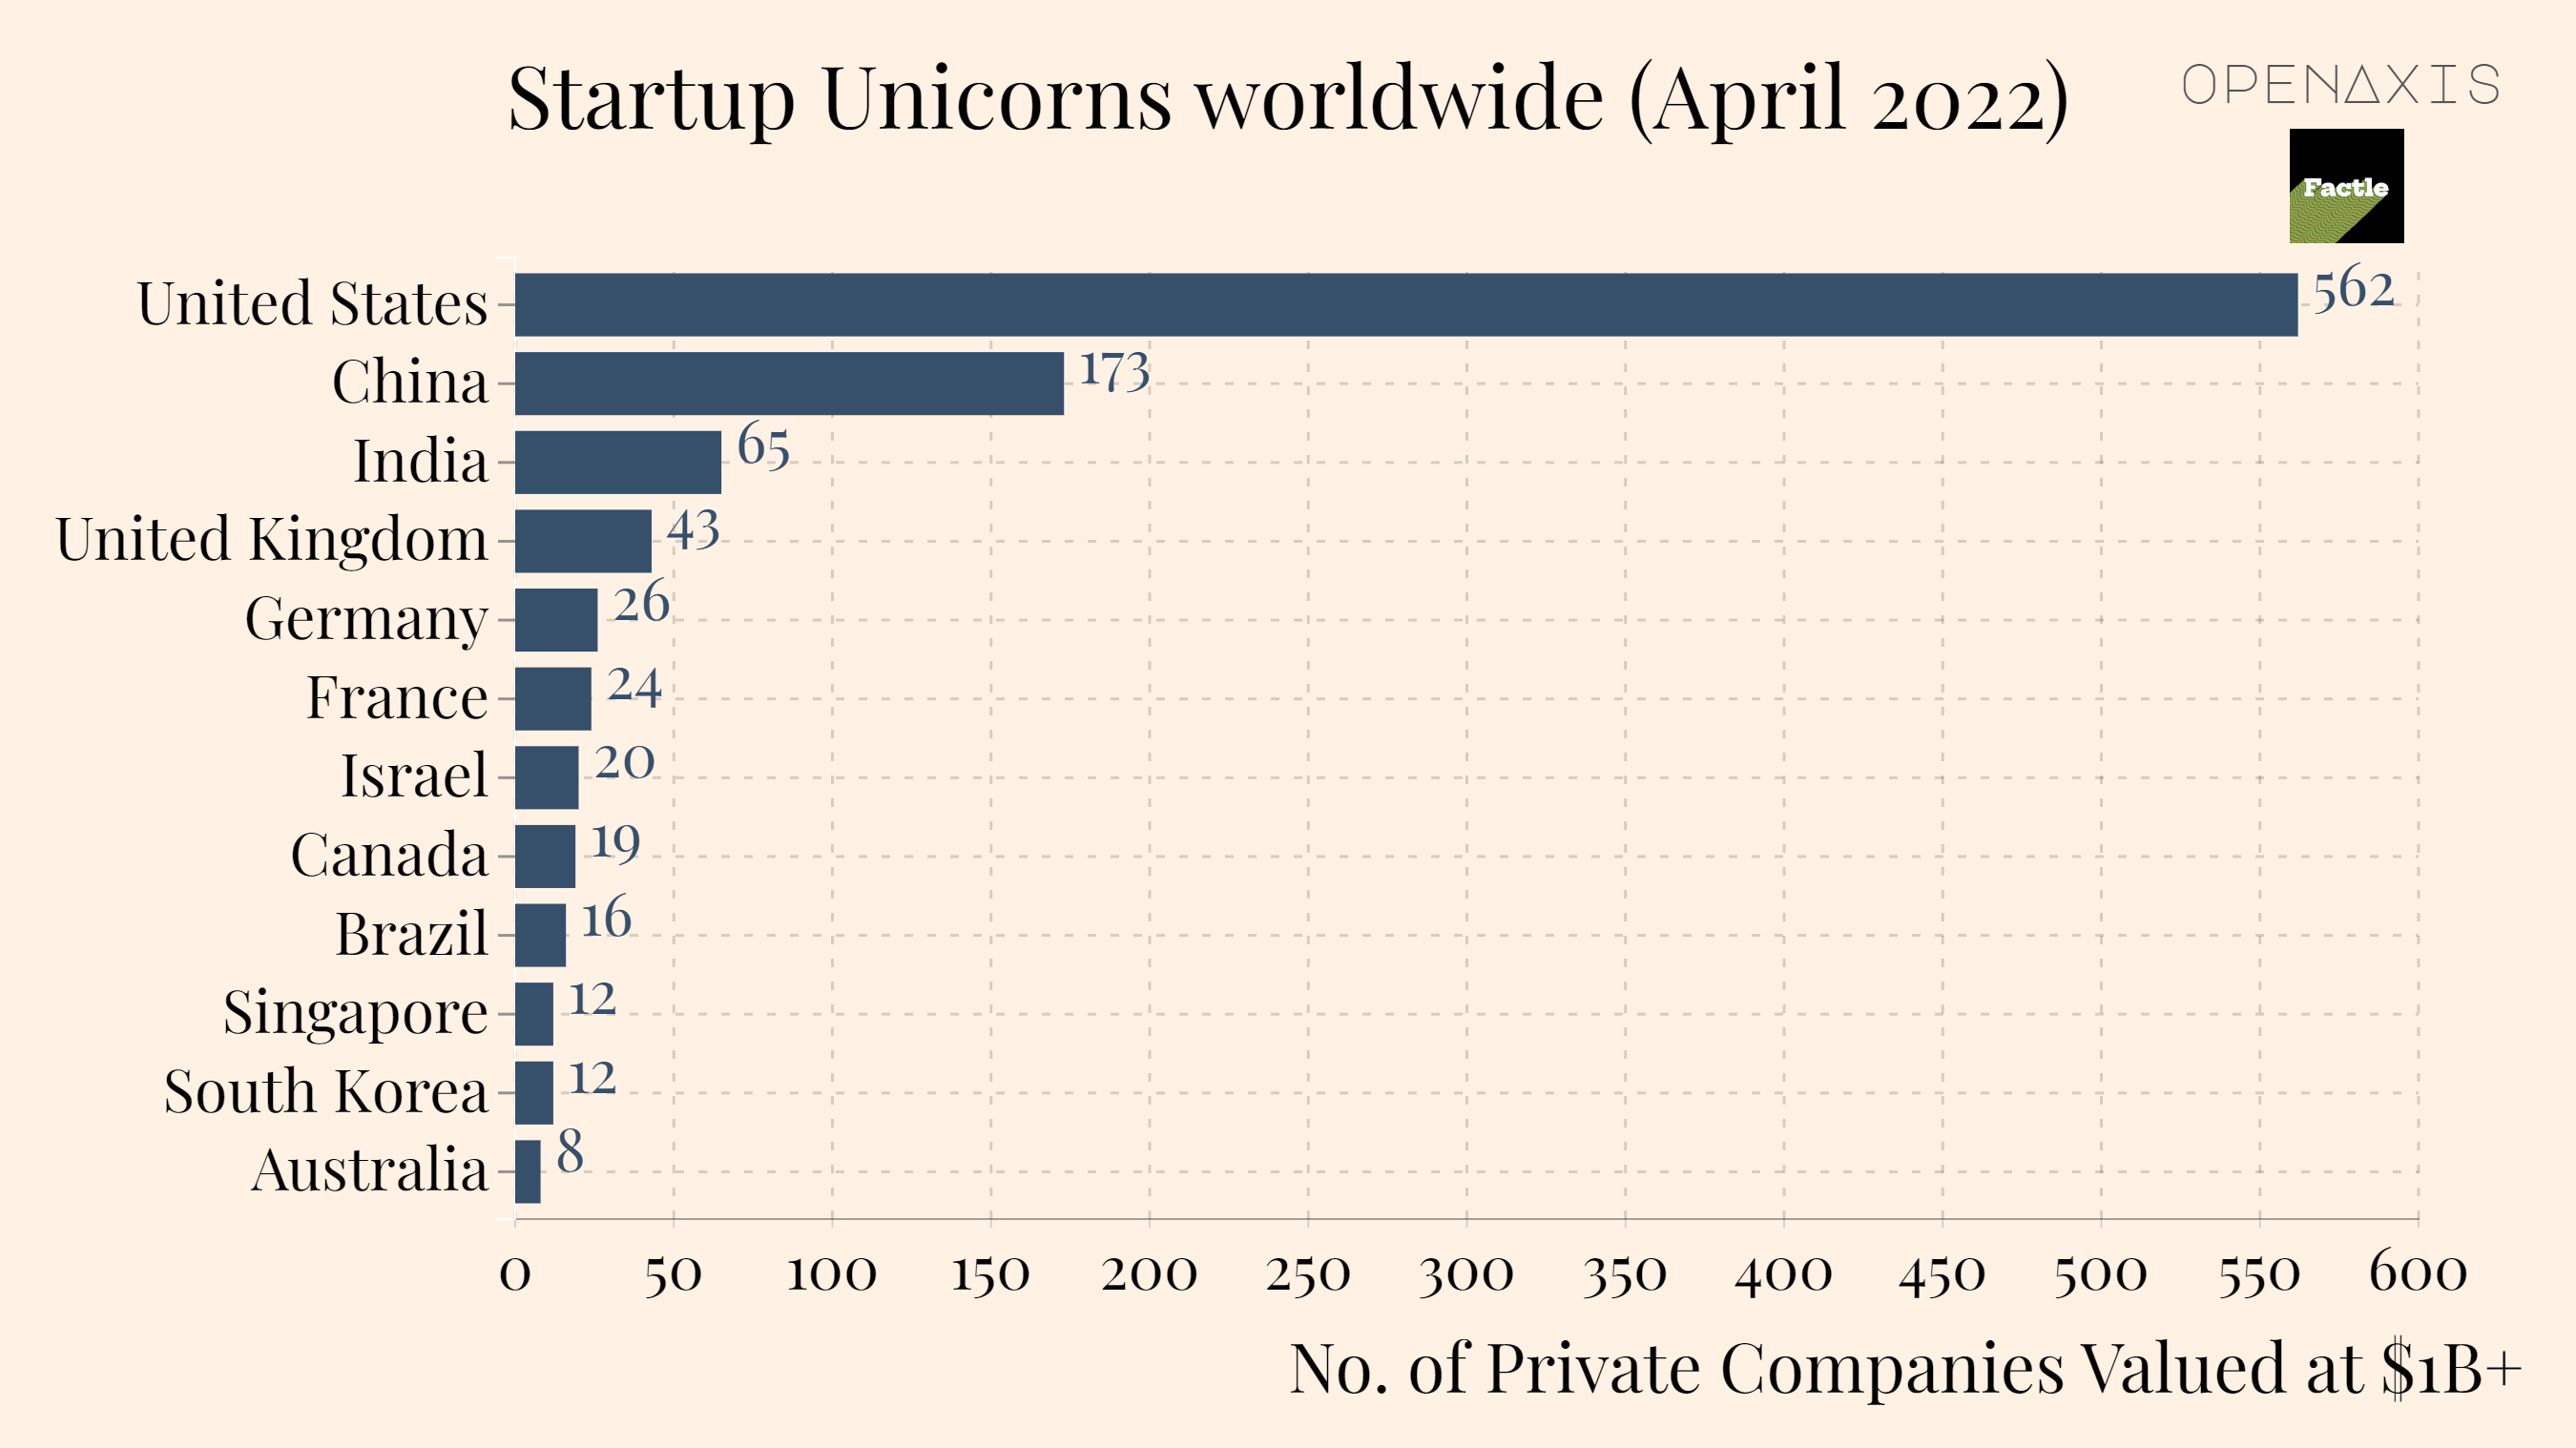 "Startup Unicorns worldwide (April 2022)"